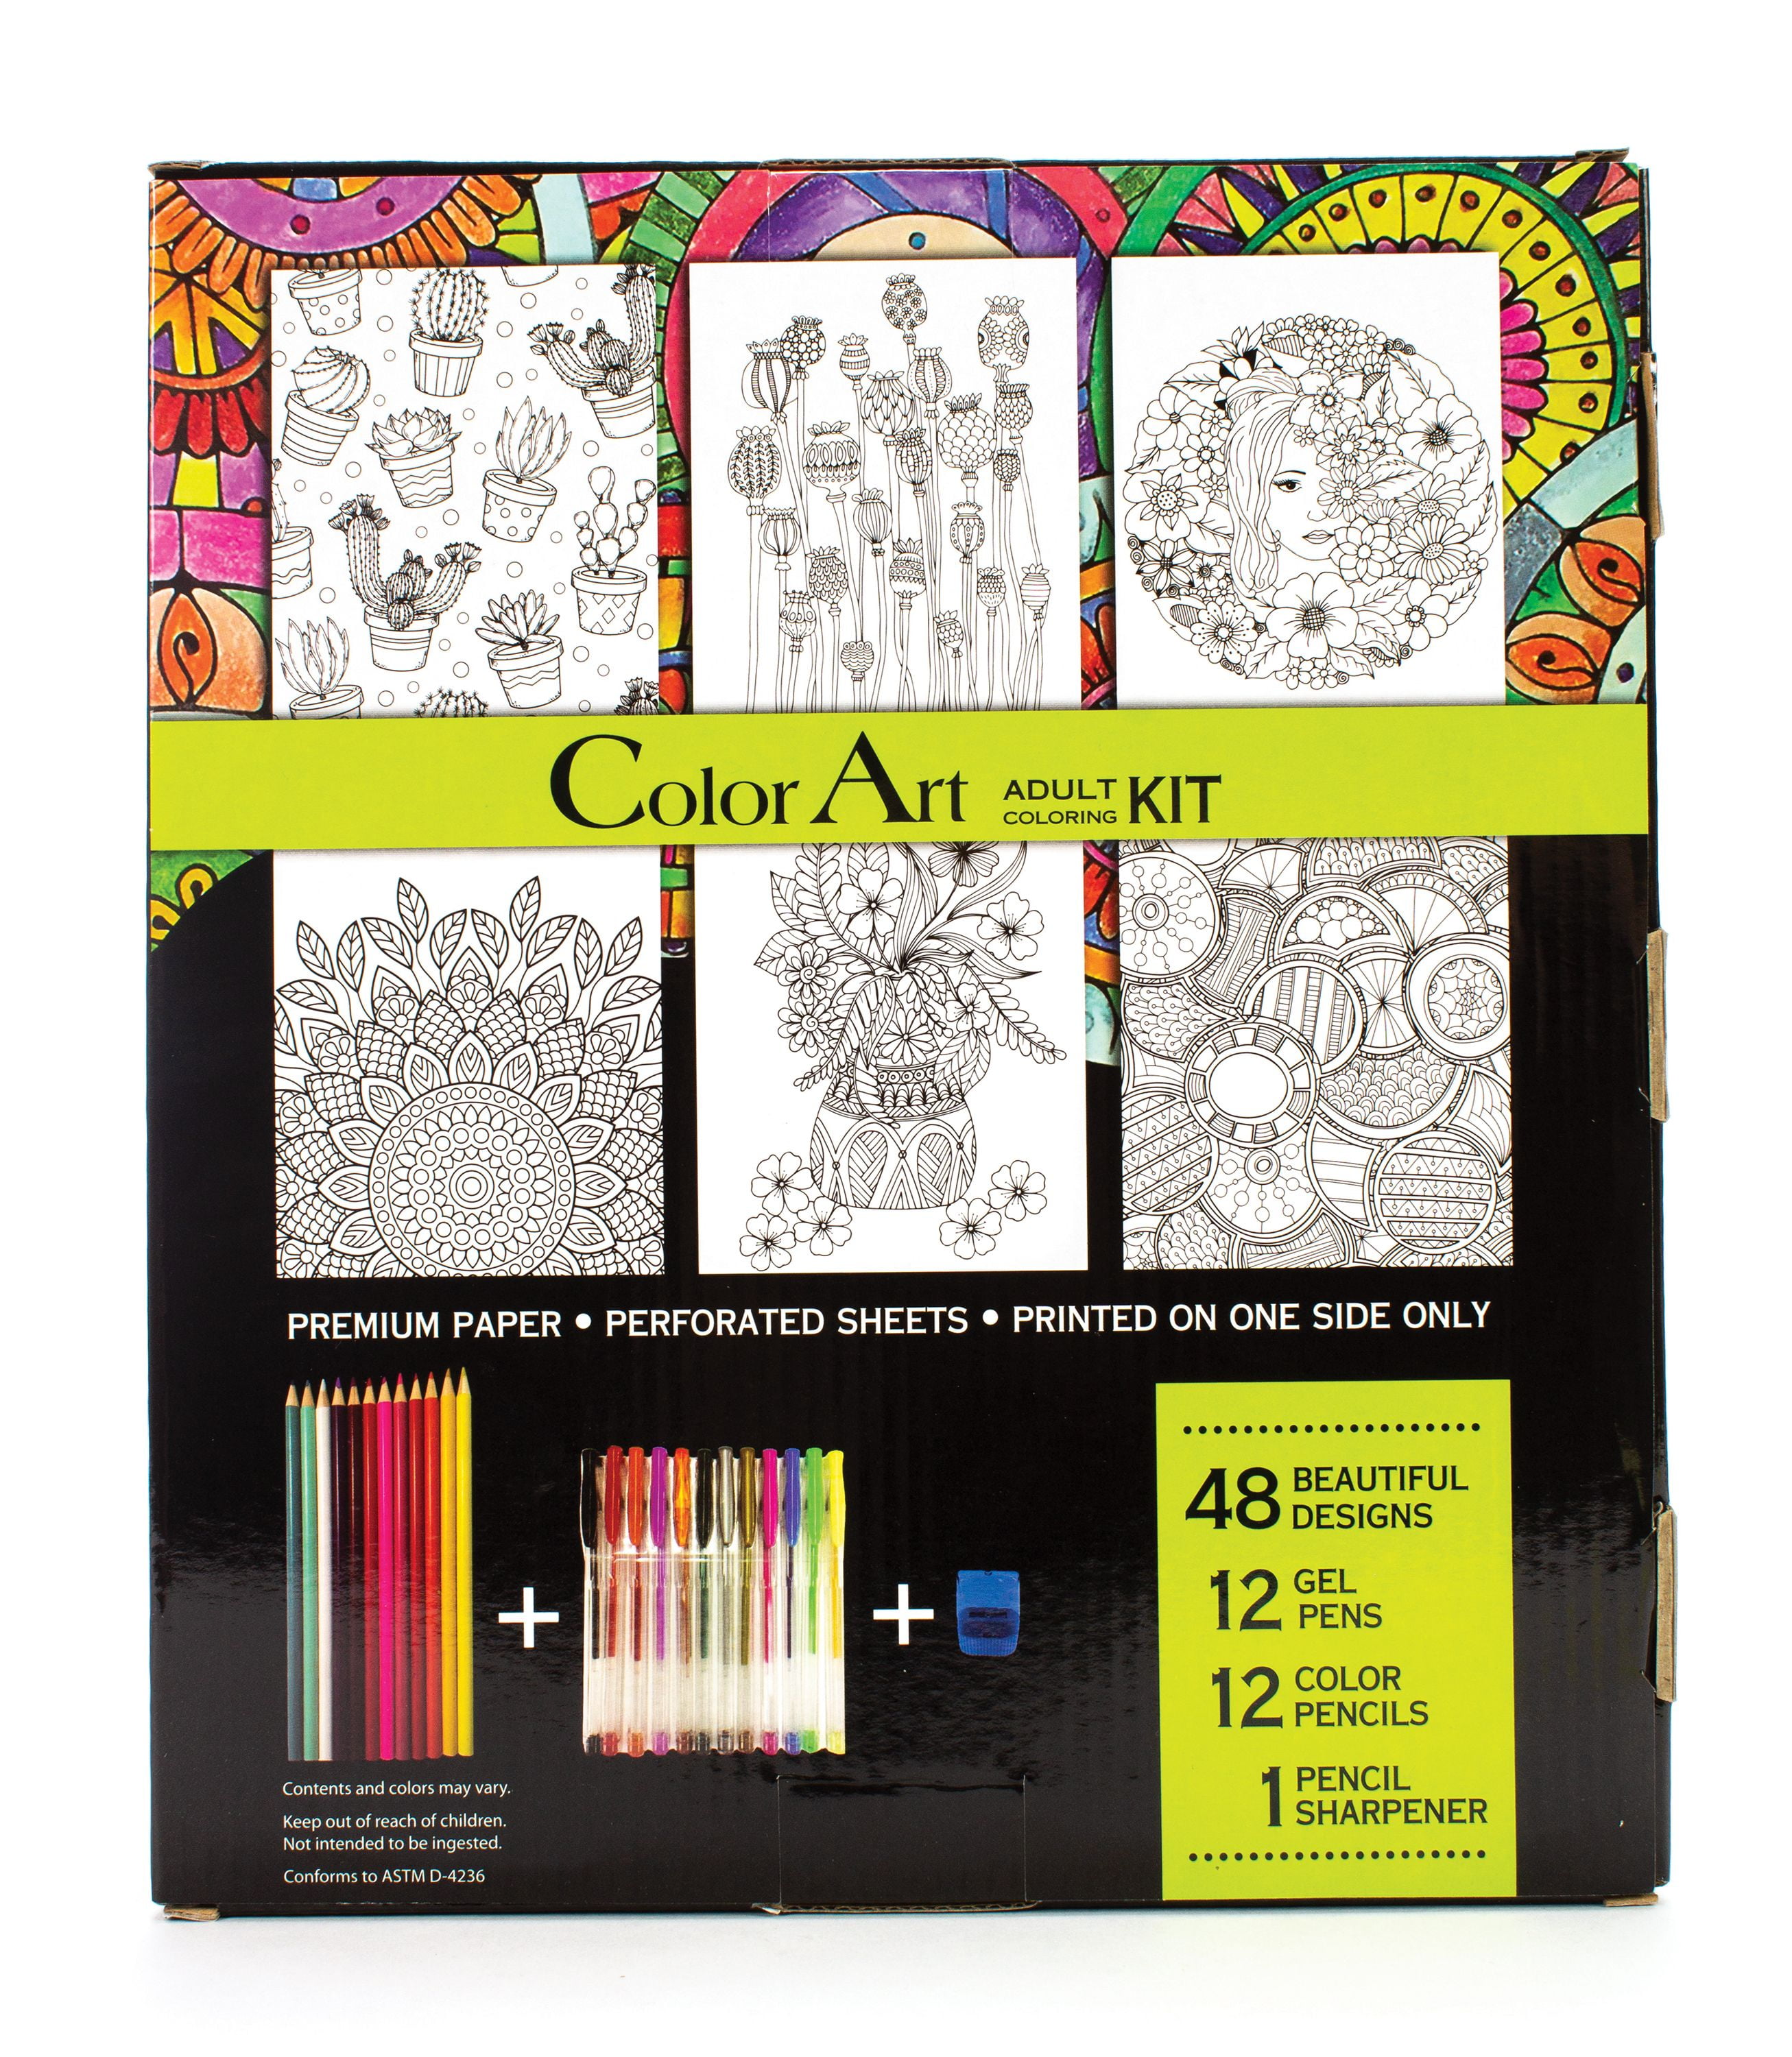 Leisure Arts Multicolor Adult Coloring Art Set Kit, 26 Piece